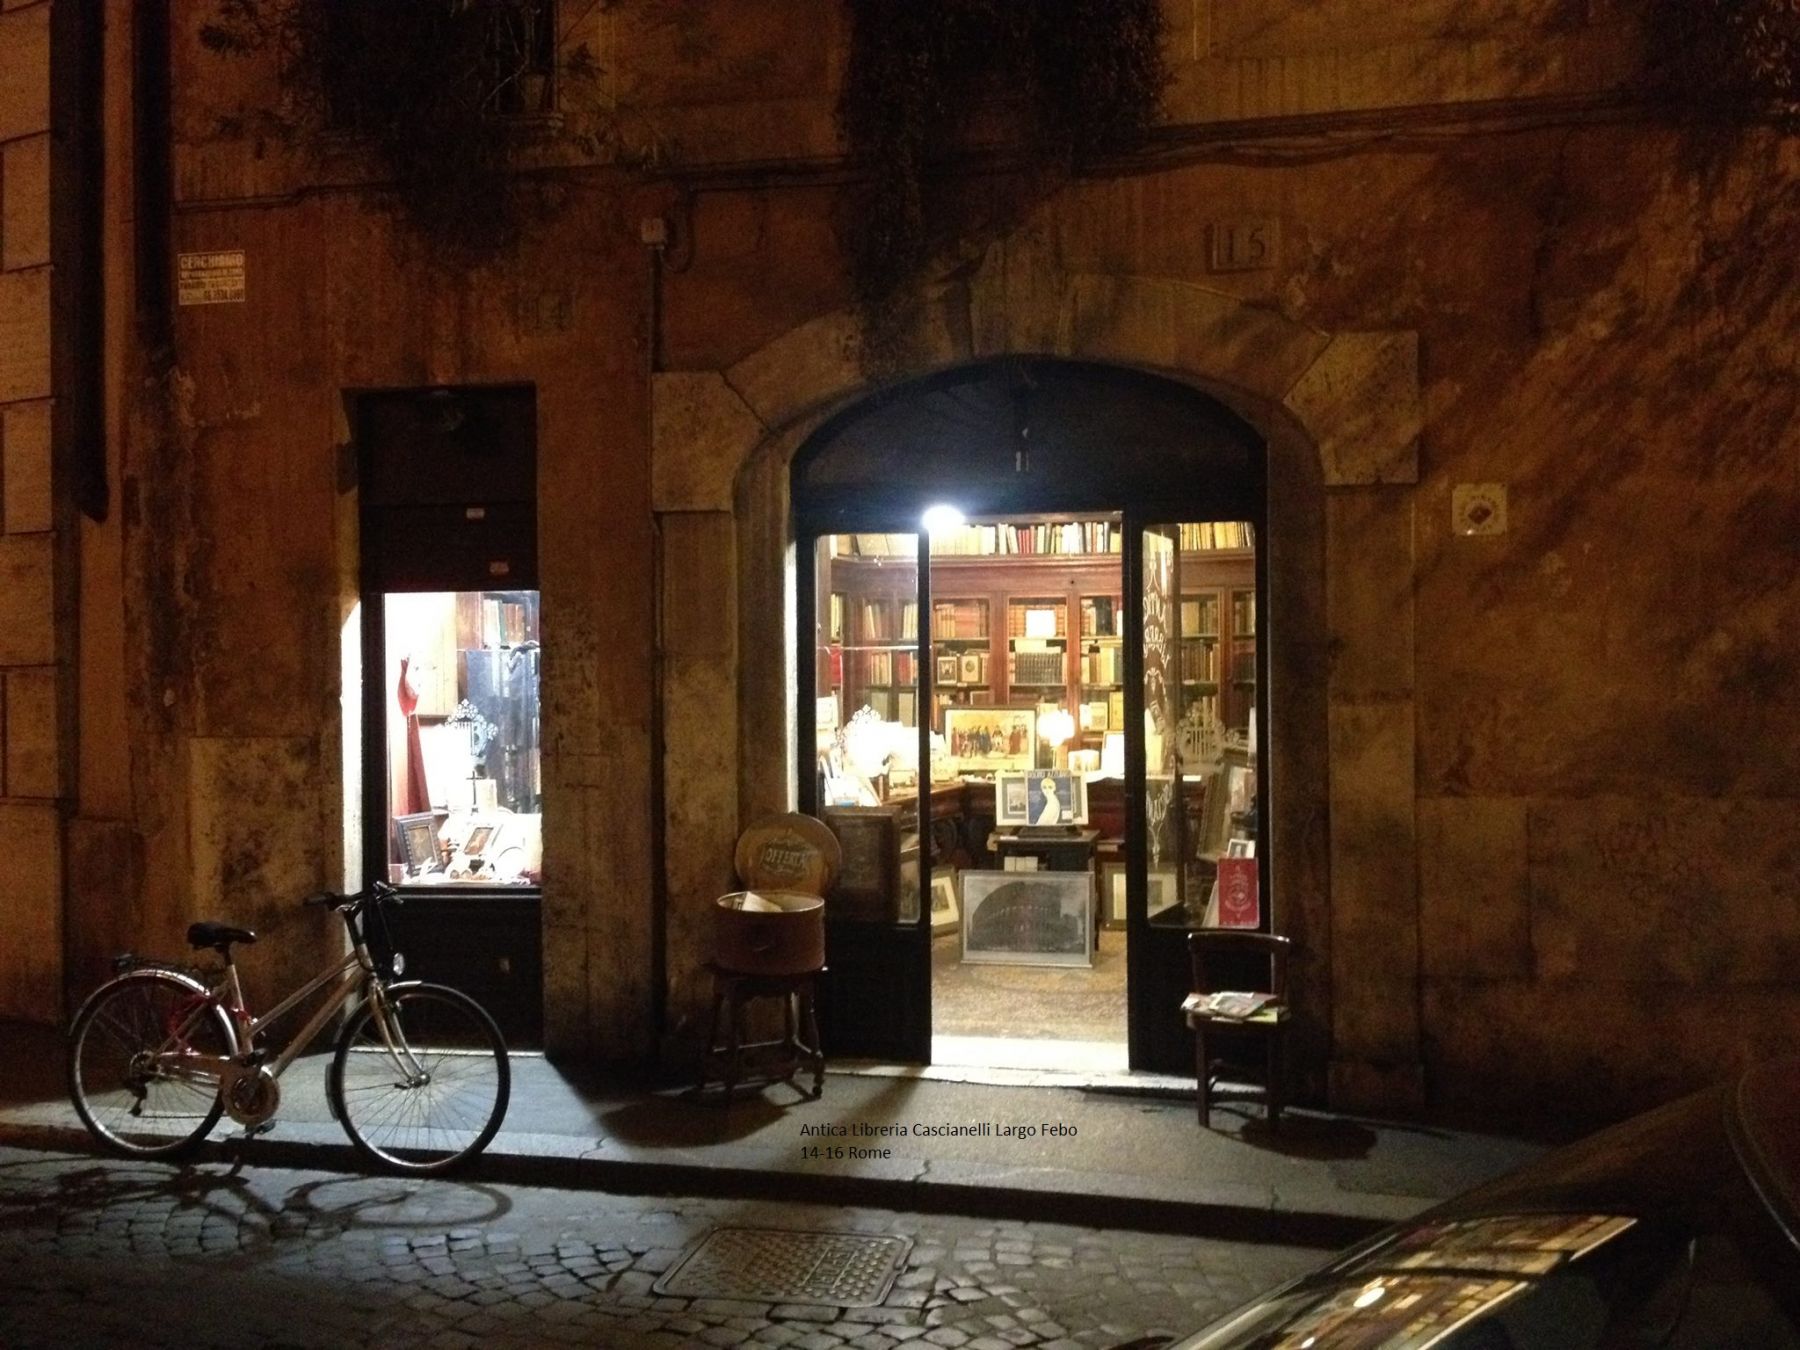 Antica Libreria Cascianelli. Lesen und Bilden in der ewigen Stadt